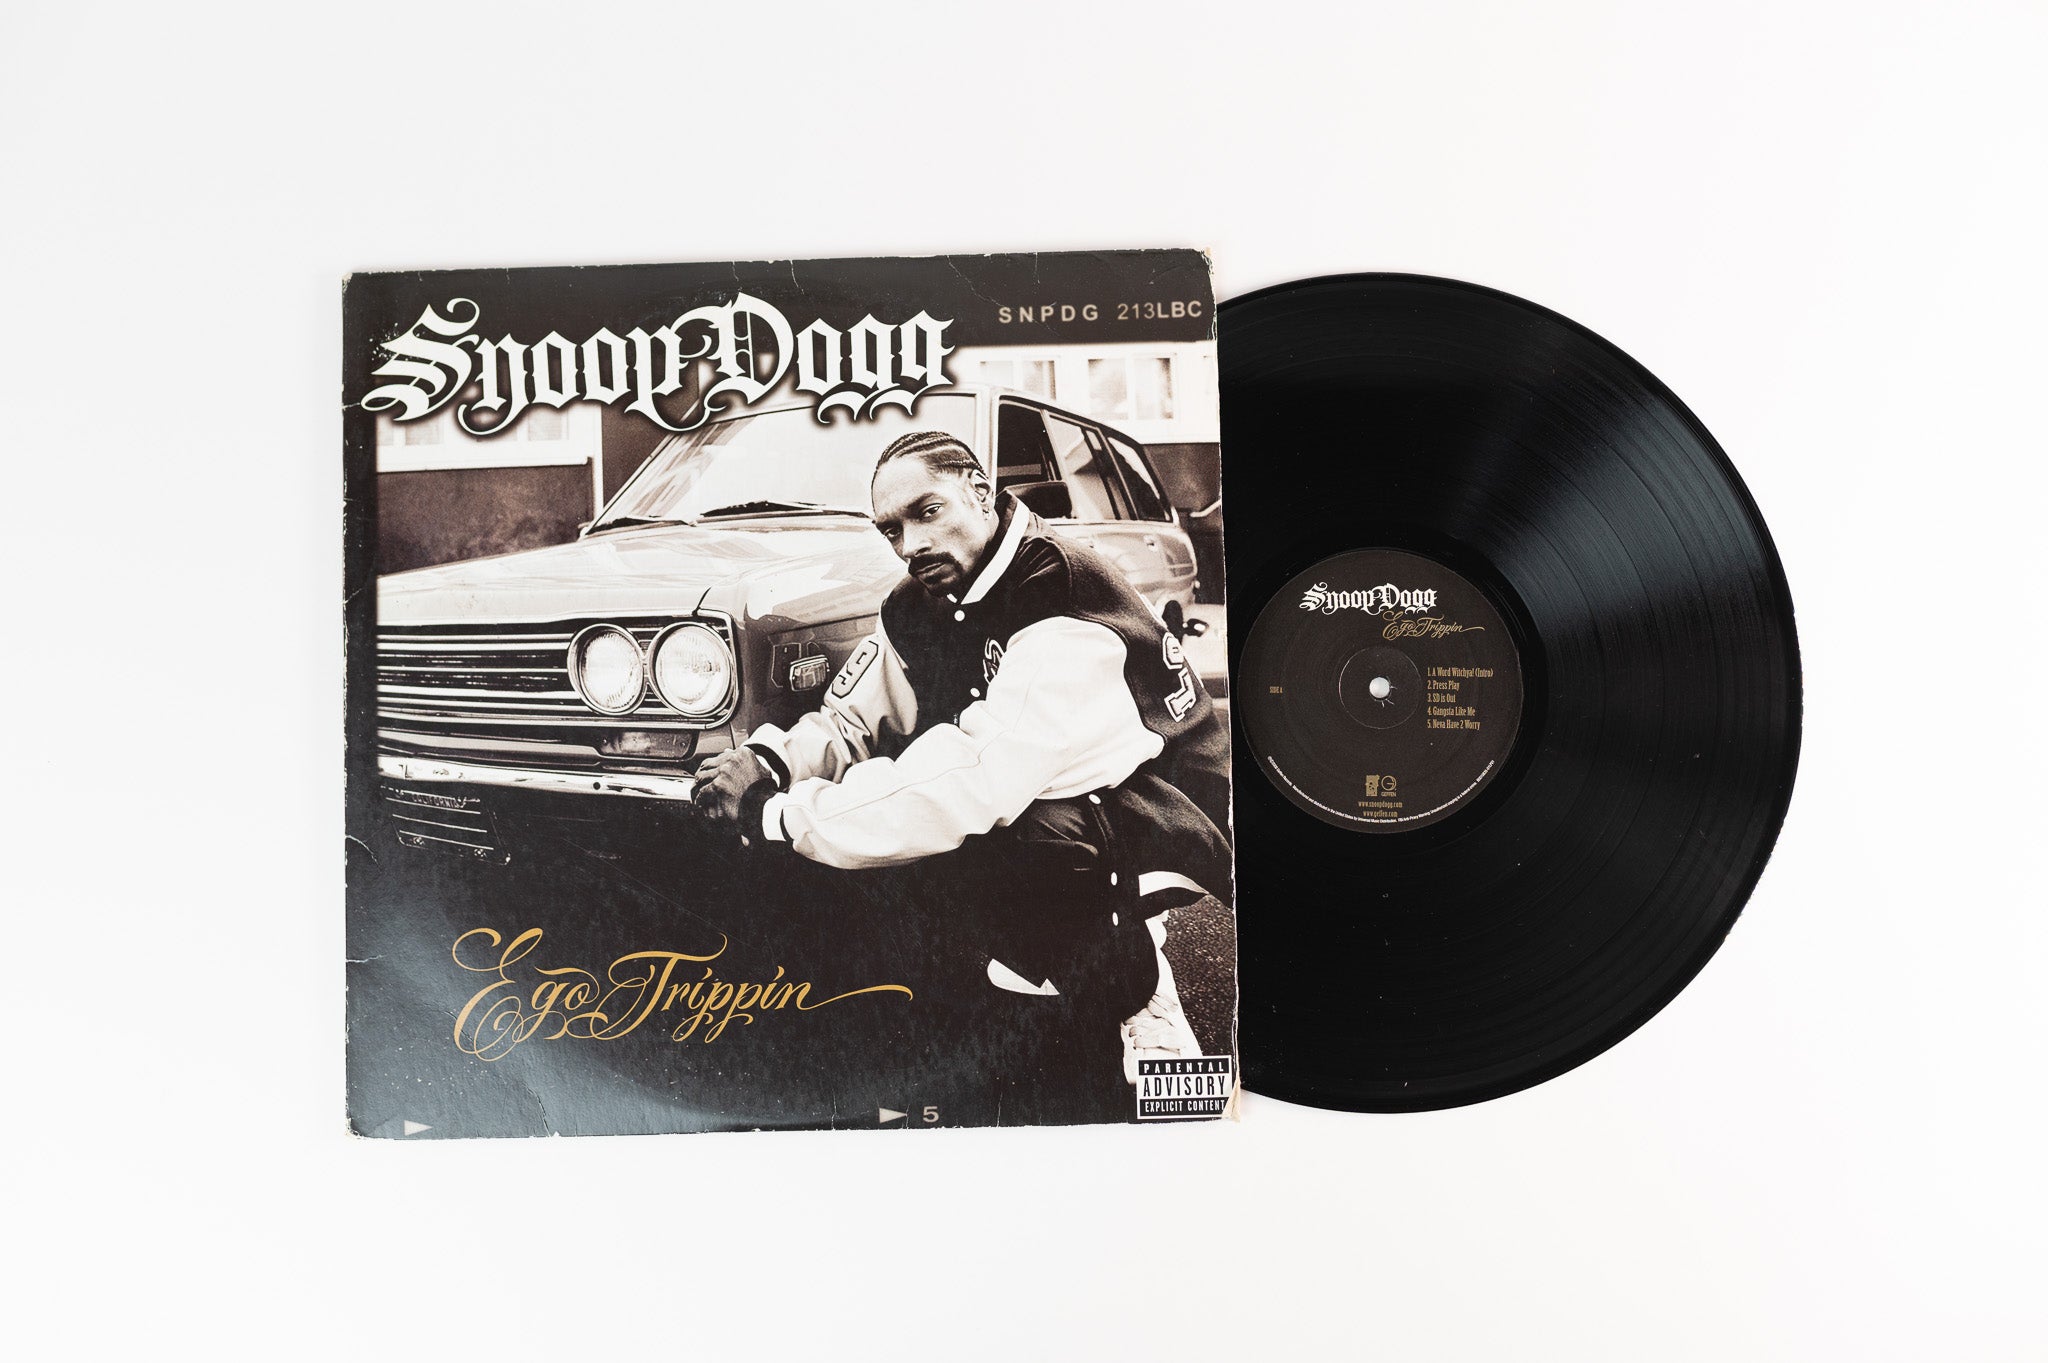 Snoop Dogg - Ego Trippin on Geffen